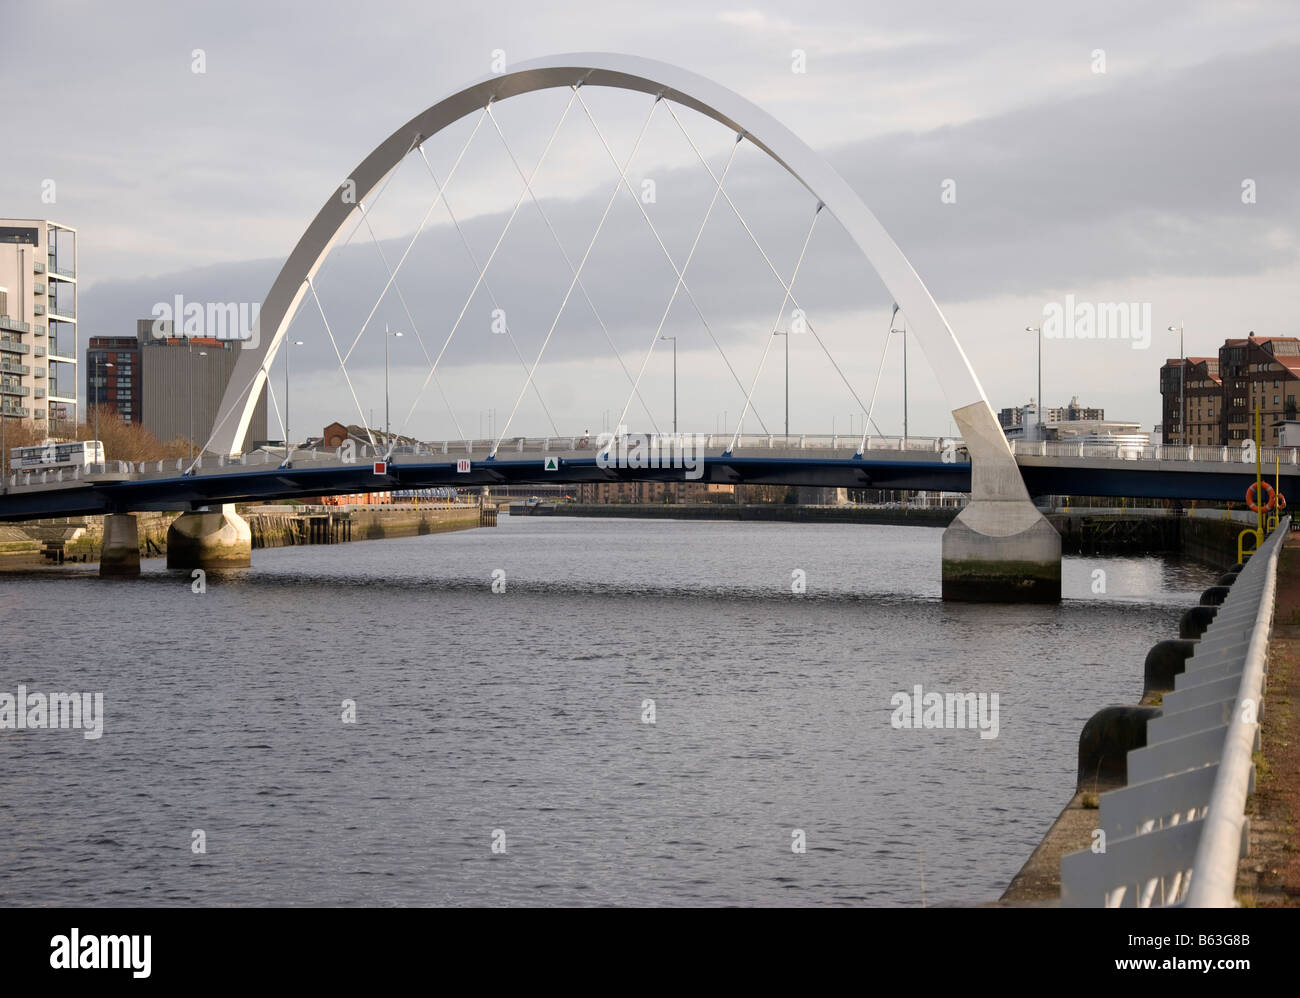 Die Squinty Brücke Fluss Clyde Finnieston Glasgow Schottland Großbritannien Vereinigtes Königreich Stockfoto